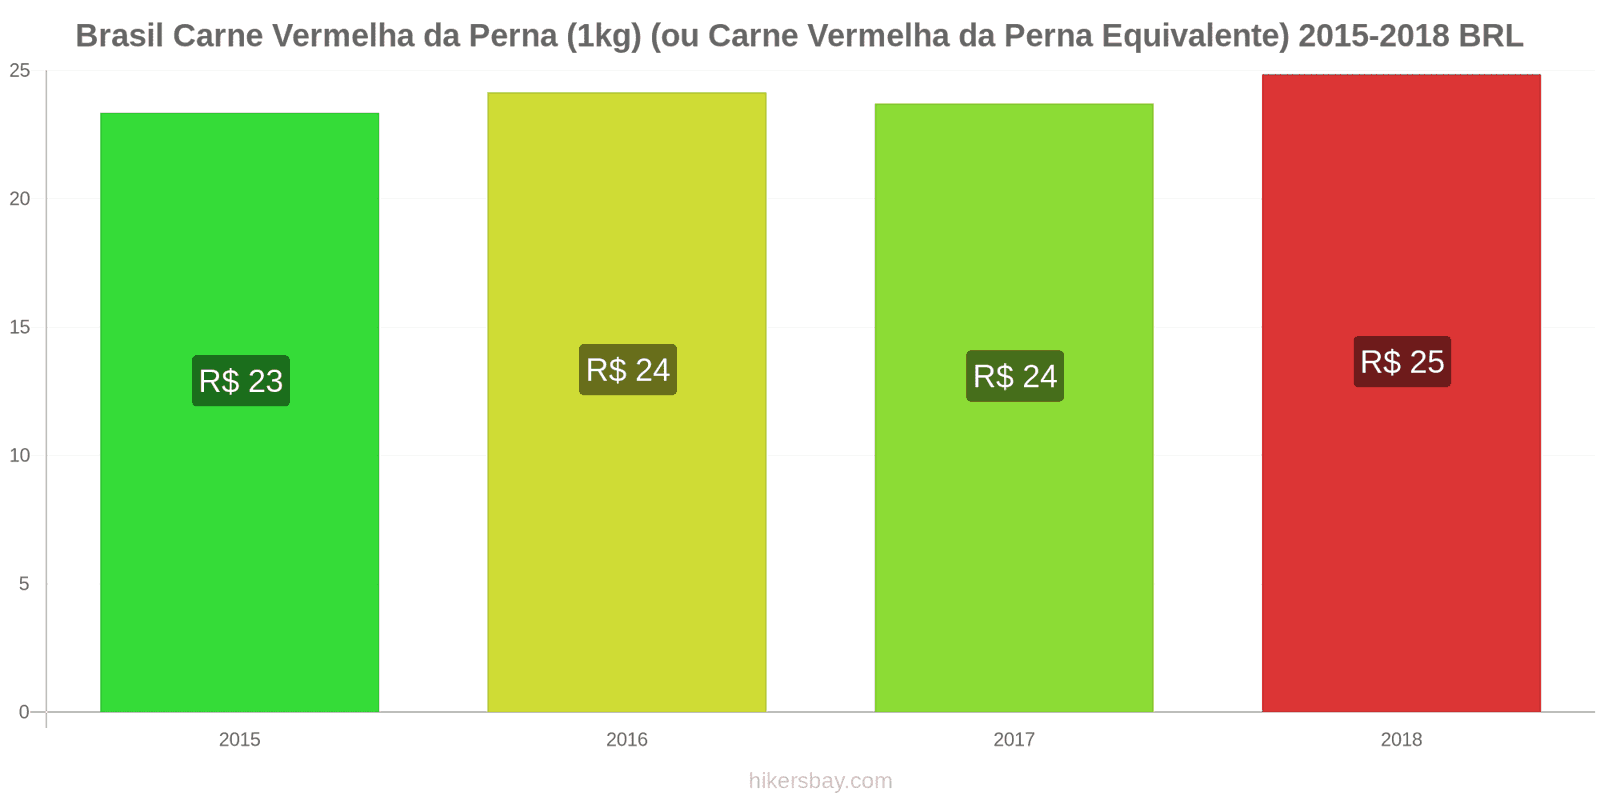 Brasil mudanças de preços Carne de bovino (1kg) (ou carne vermelha similar) hikersbay.com